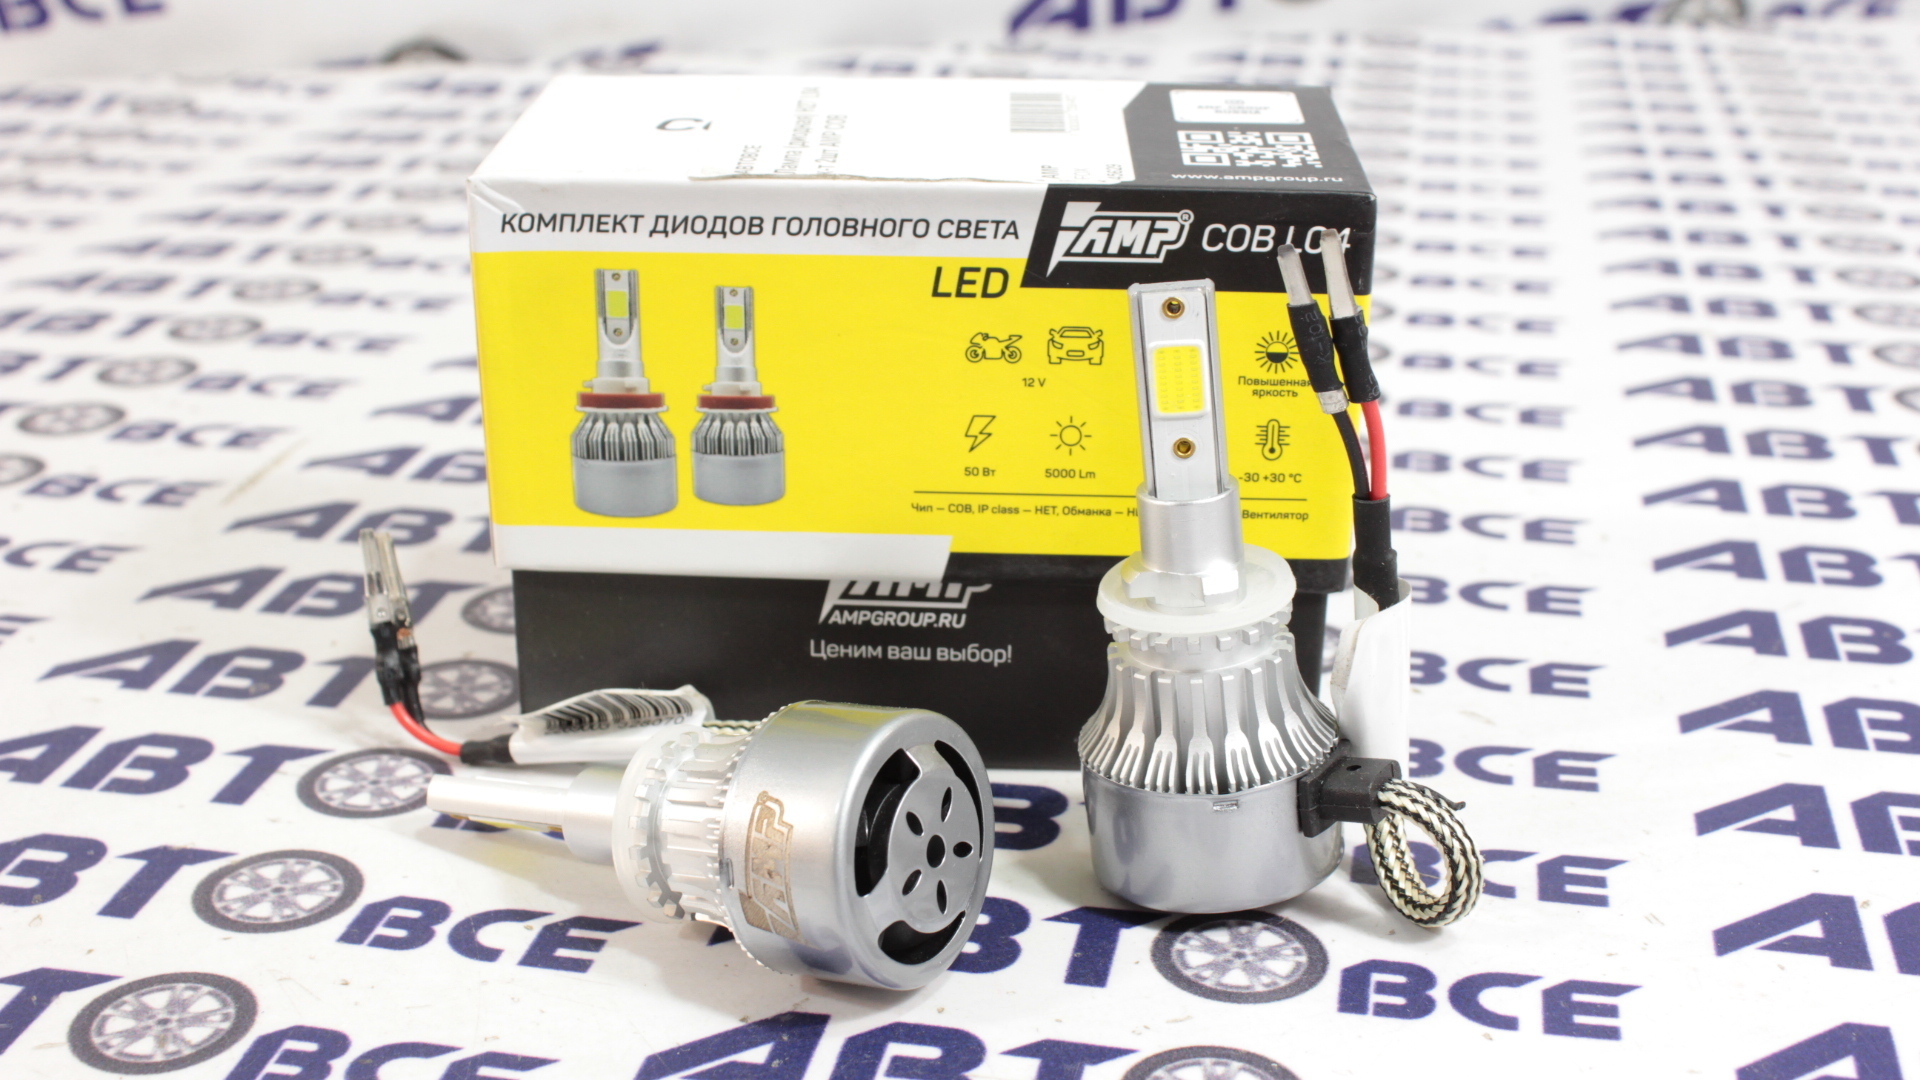 Лампа фары LED - диодная H27 COB-L04 комплект 2 штуки AMP